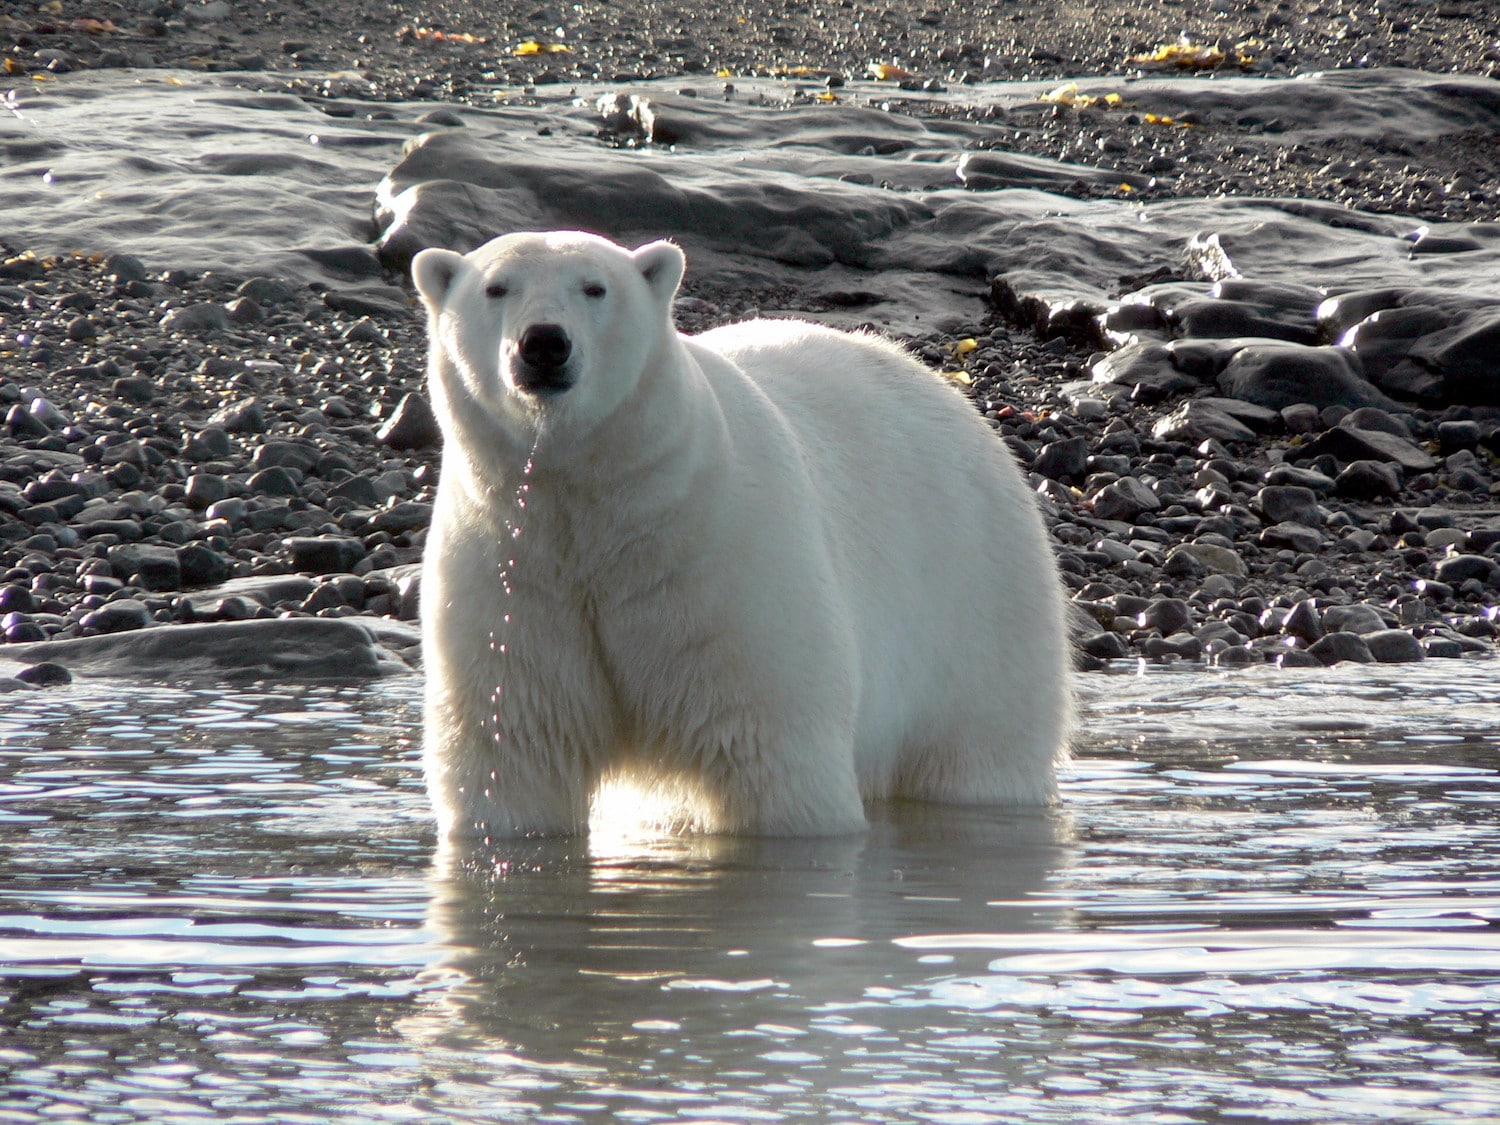 Lire la suite à propos de l’article Ours polaires et glaciers sur Baffin Island